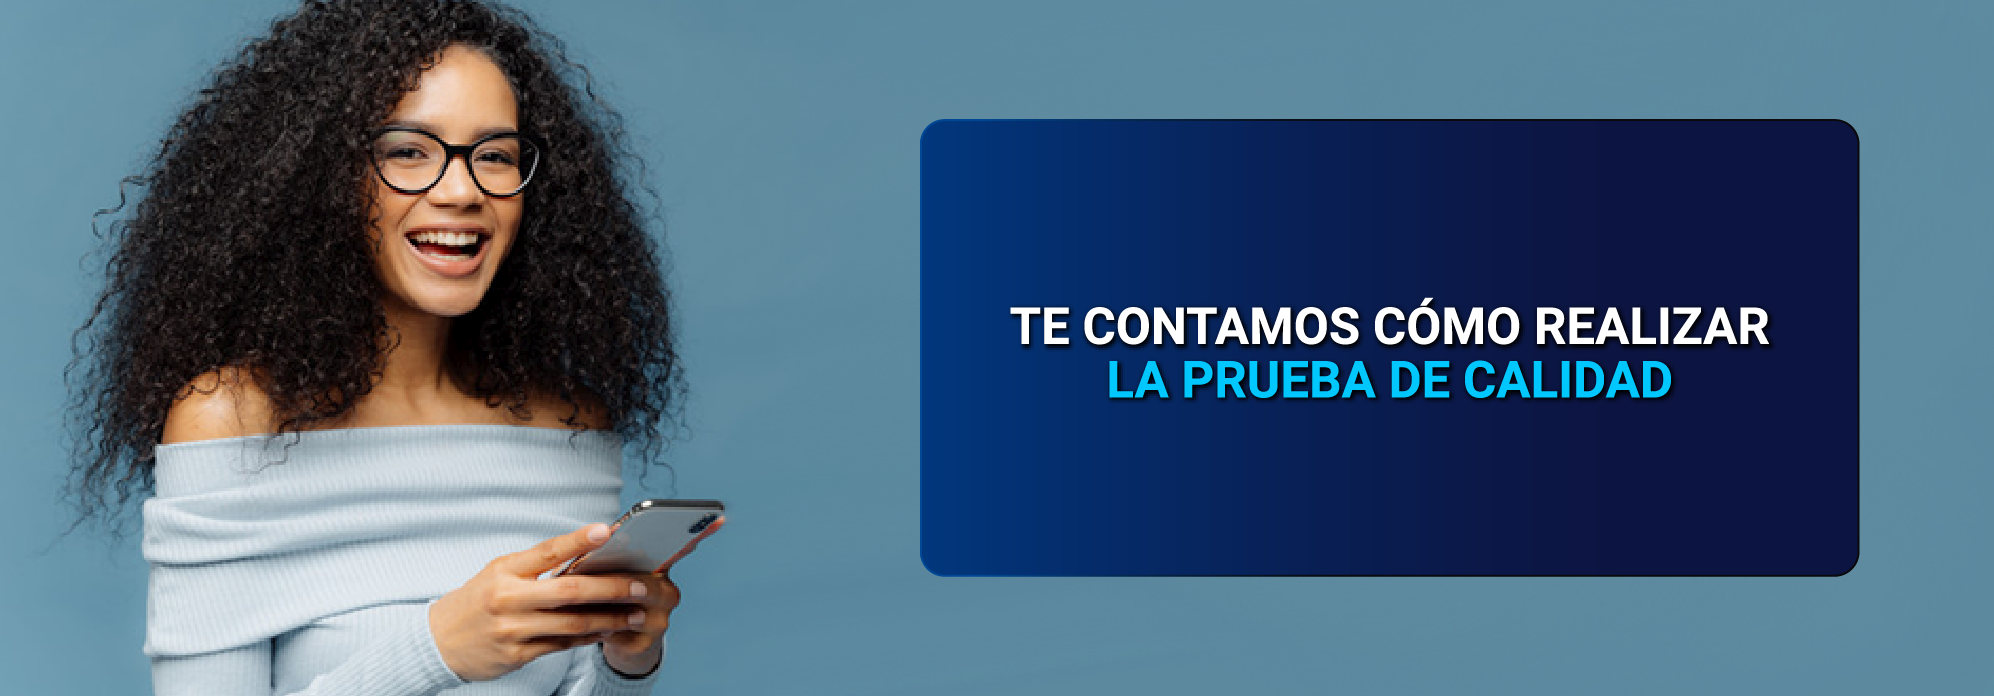 5 formas de mejorar la cobertura móvil de Tigo - Colombia